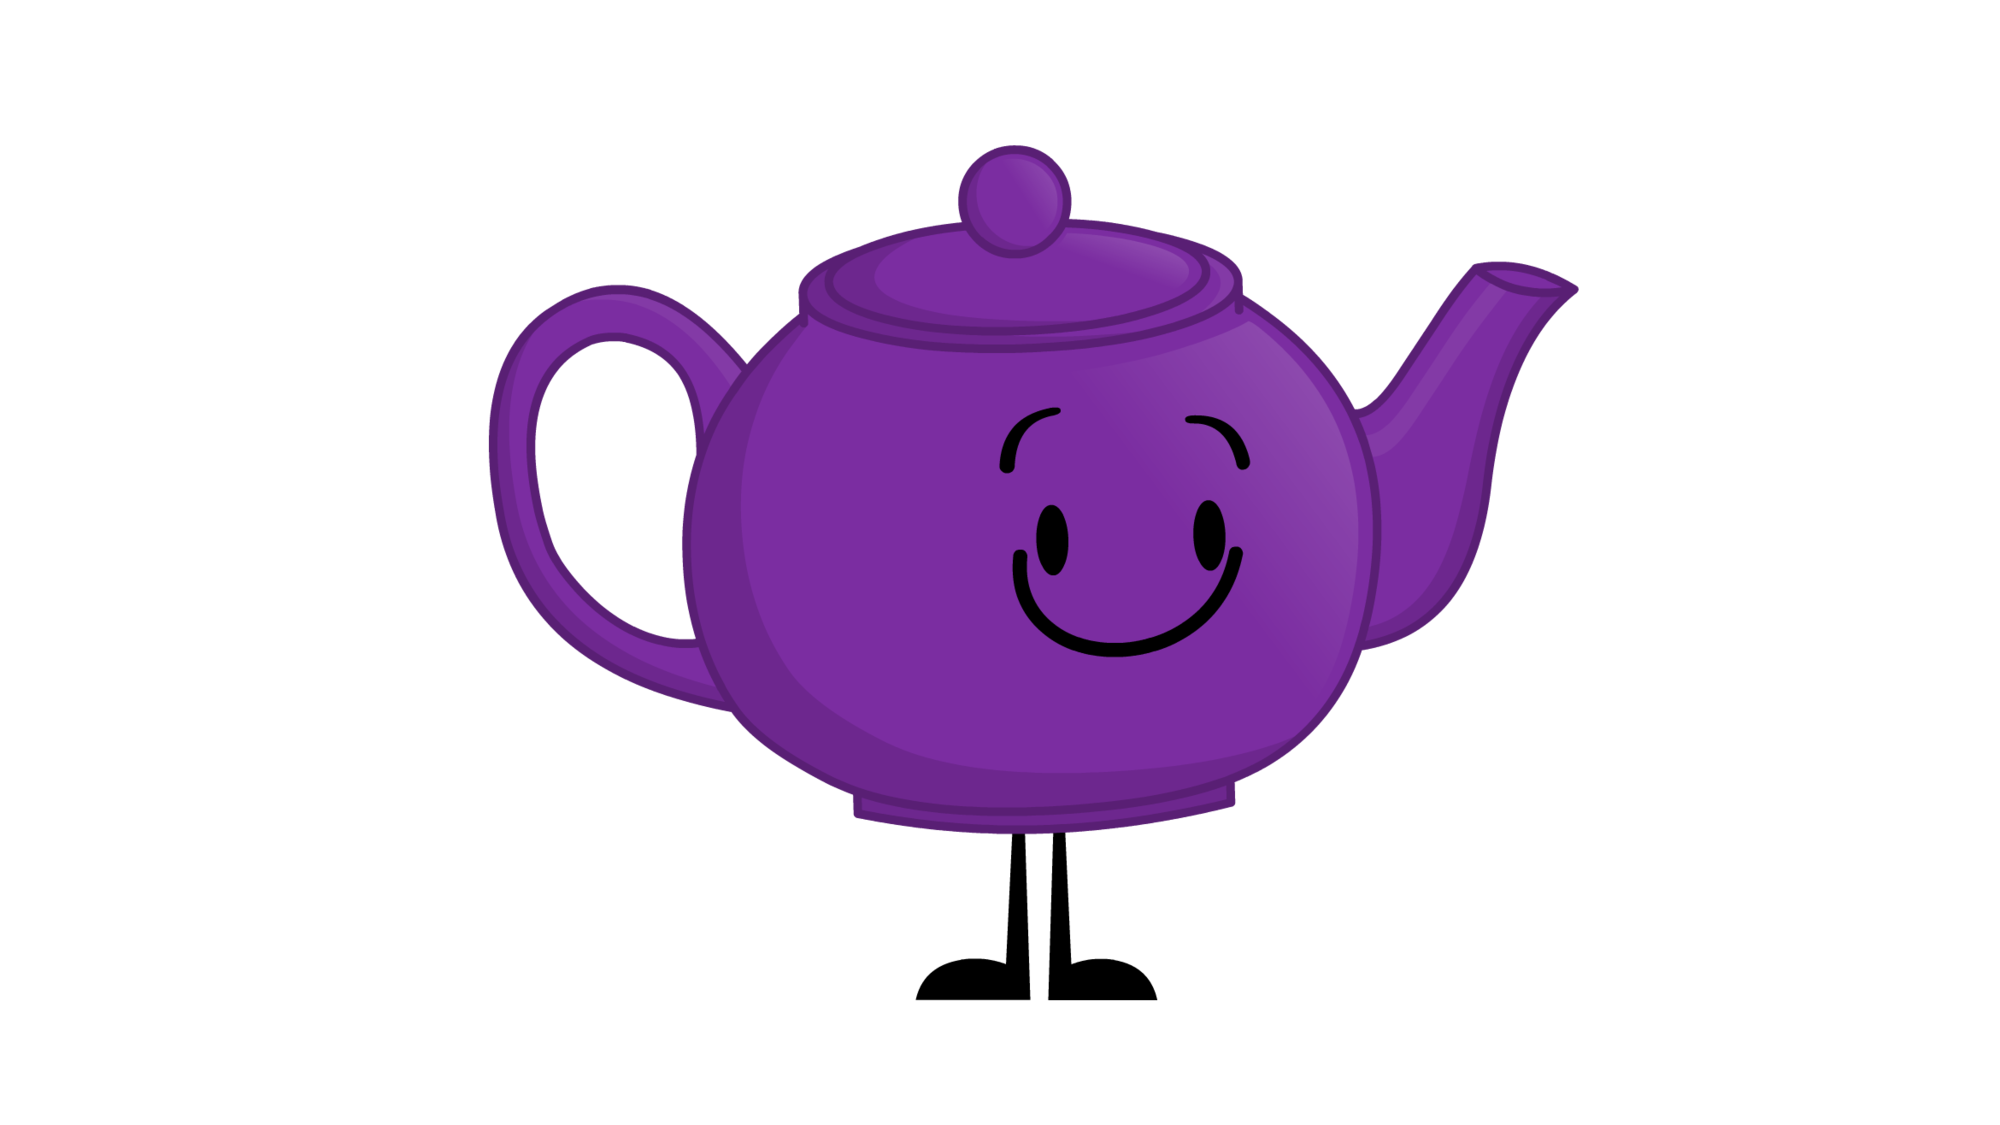 Teapot PNG Image Transparent